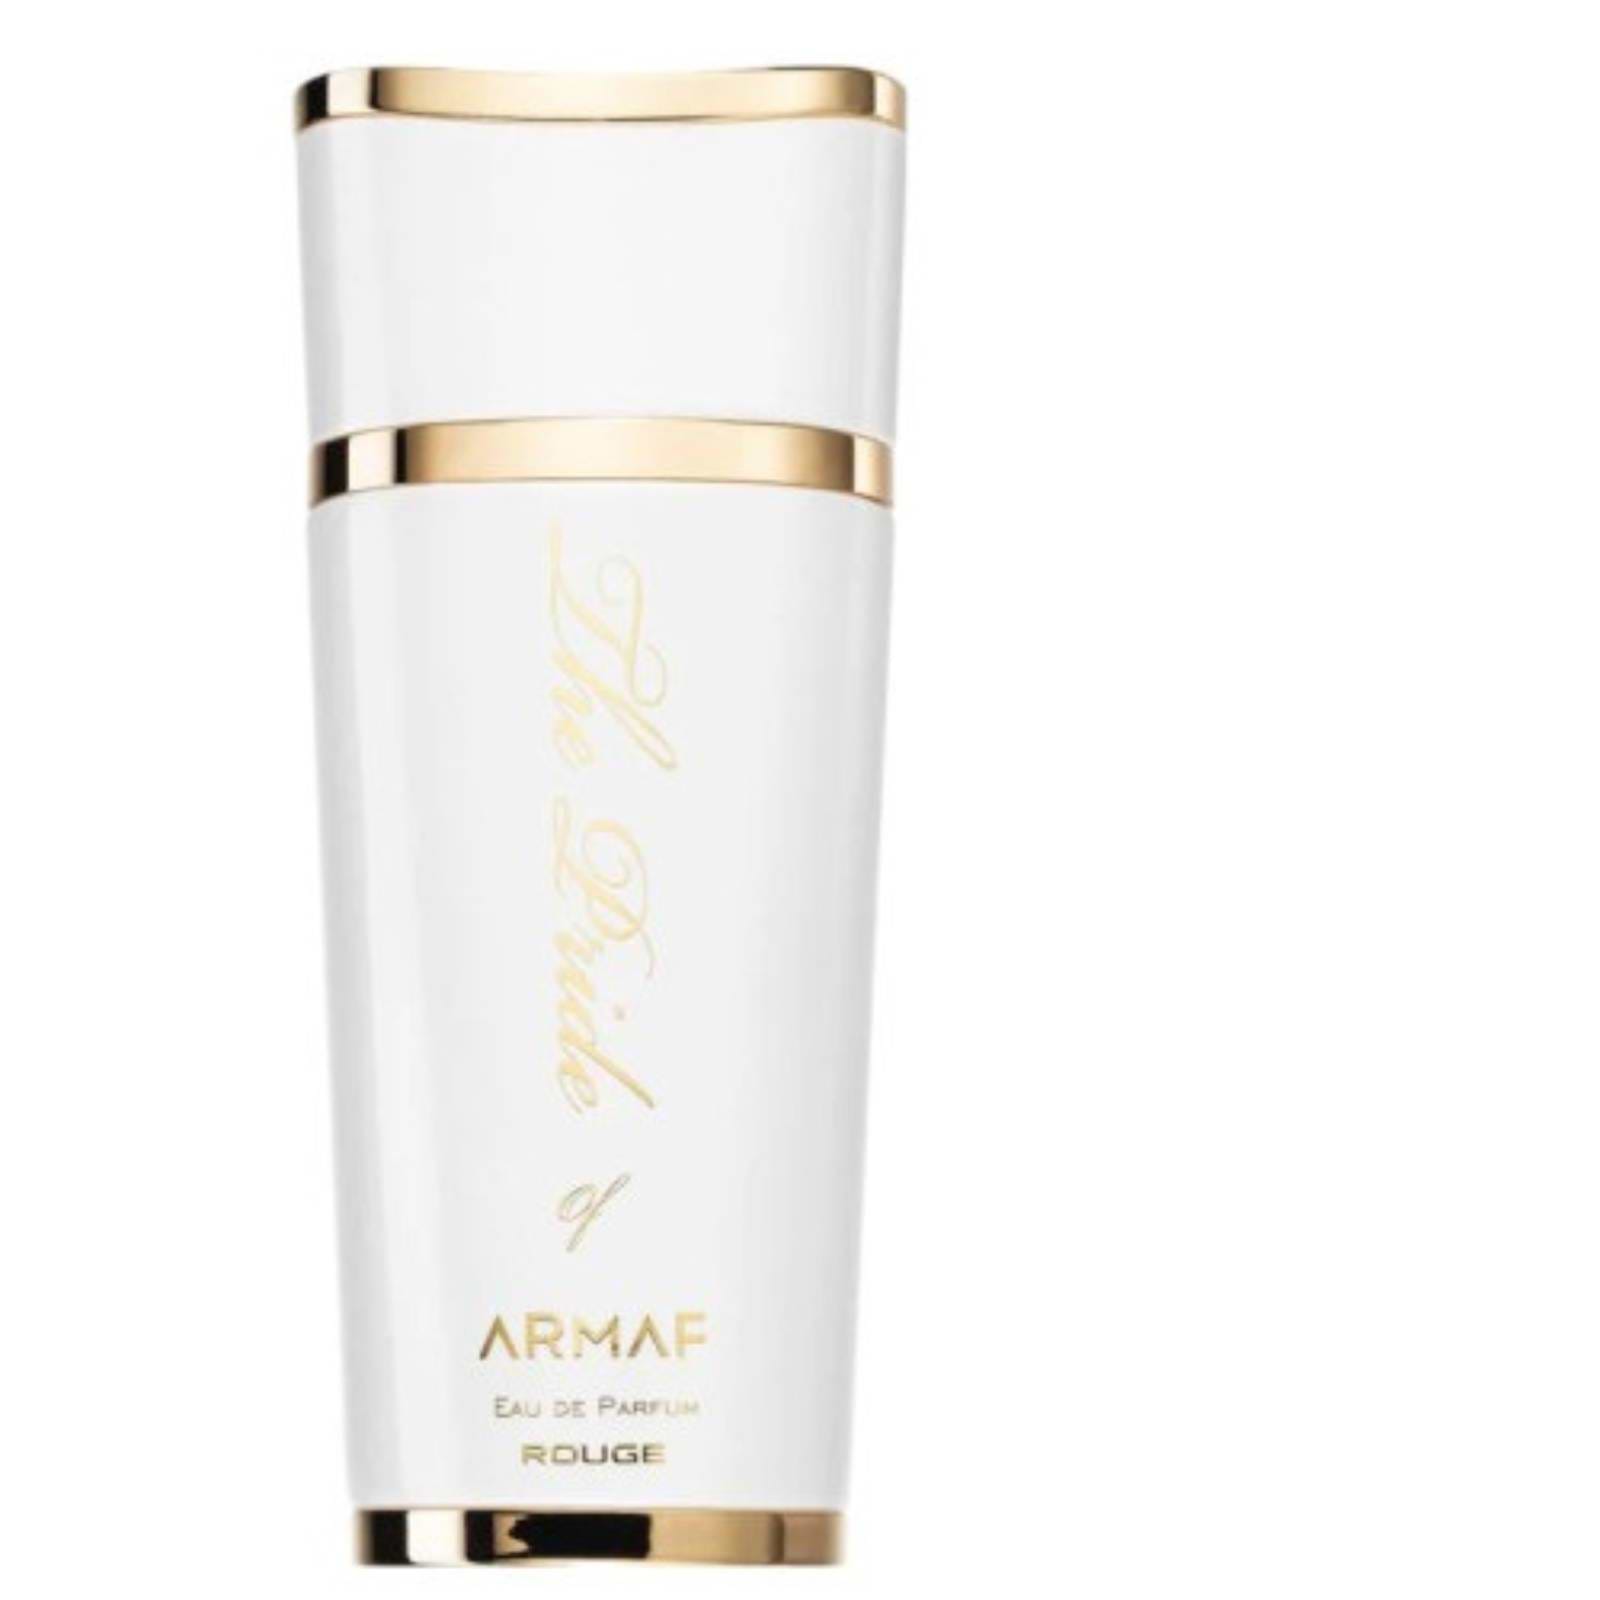 בושם לאישה Armaf The Pride Of Armaf White eau de parfum for women 100ML